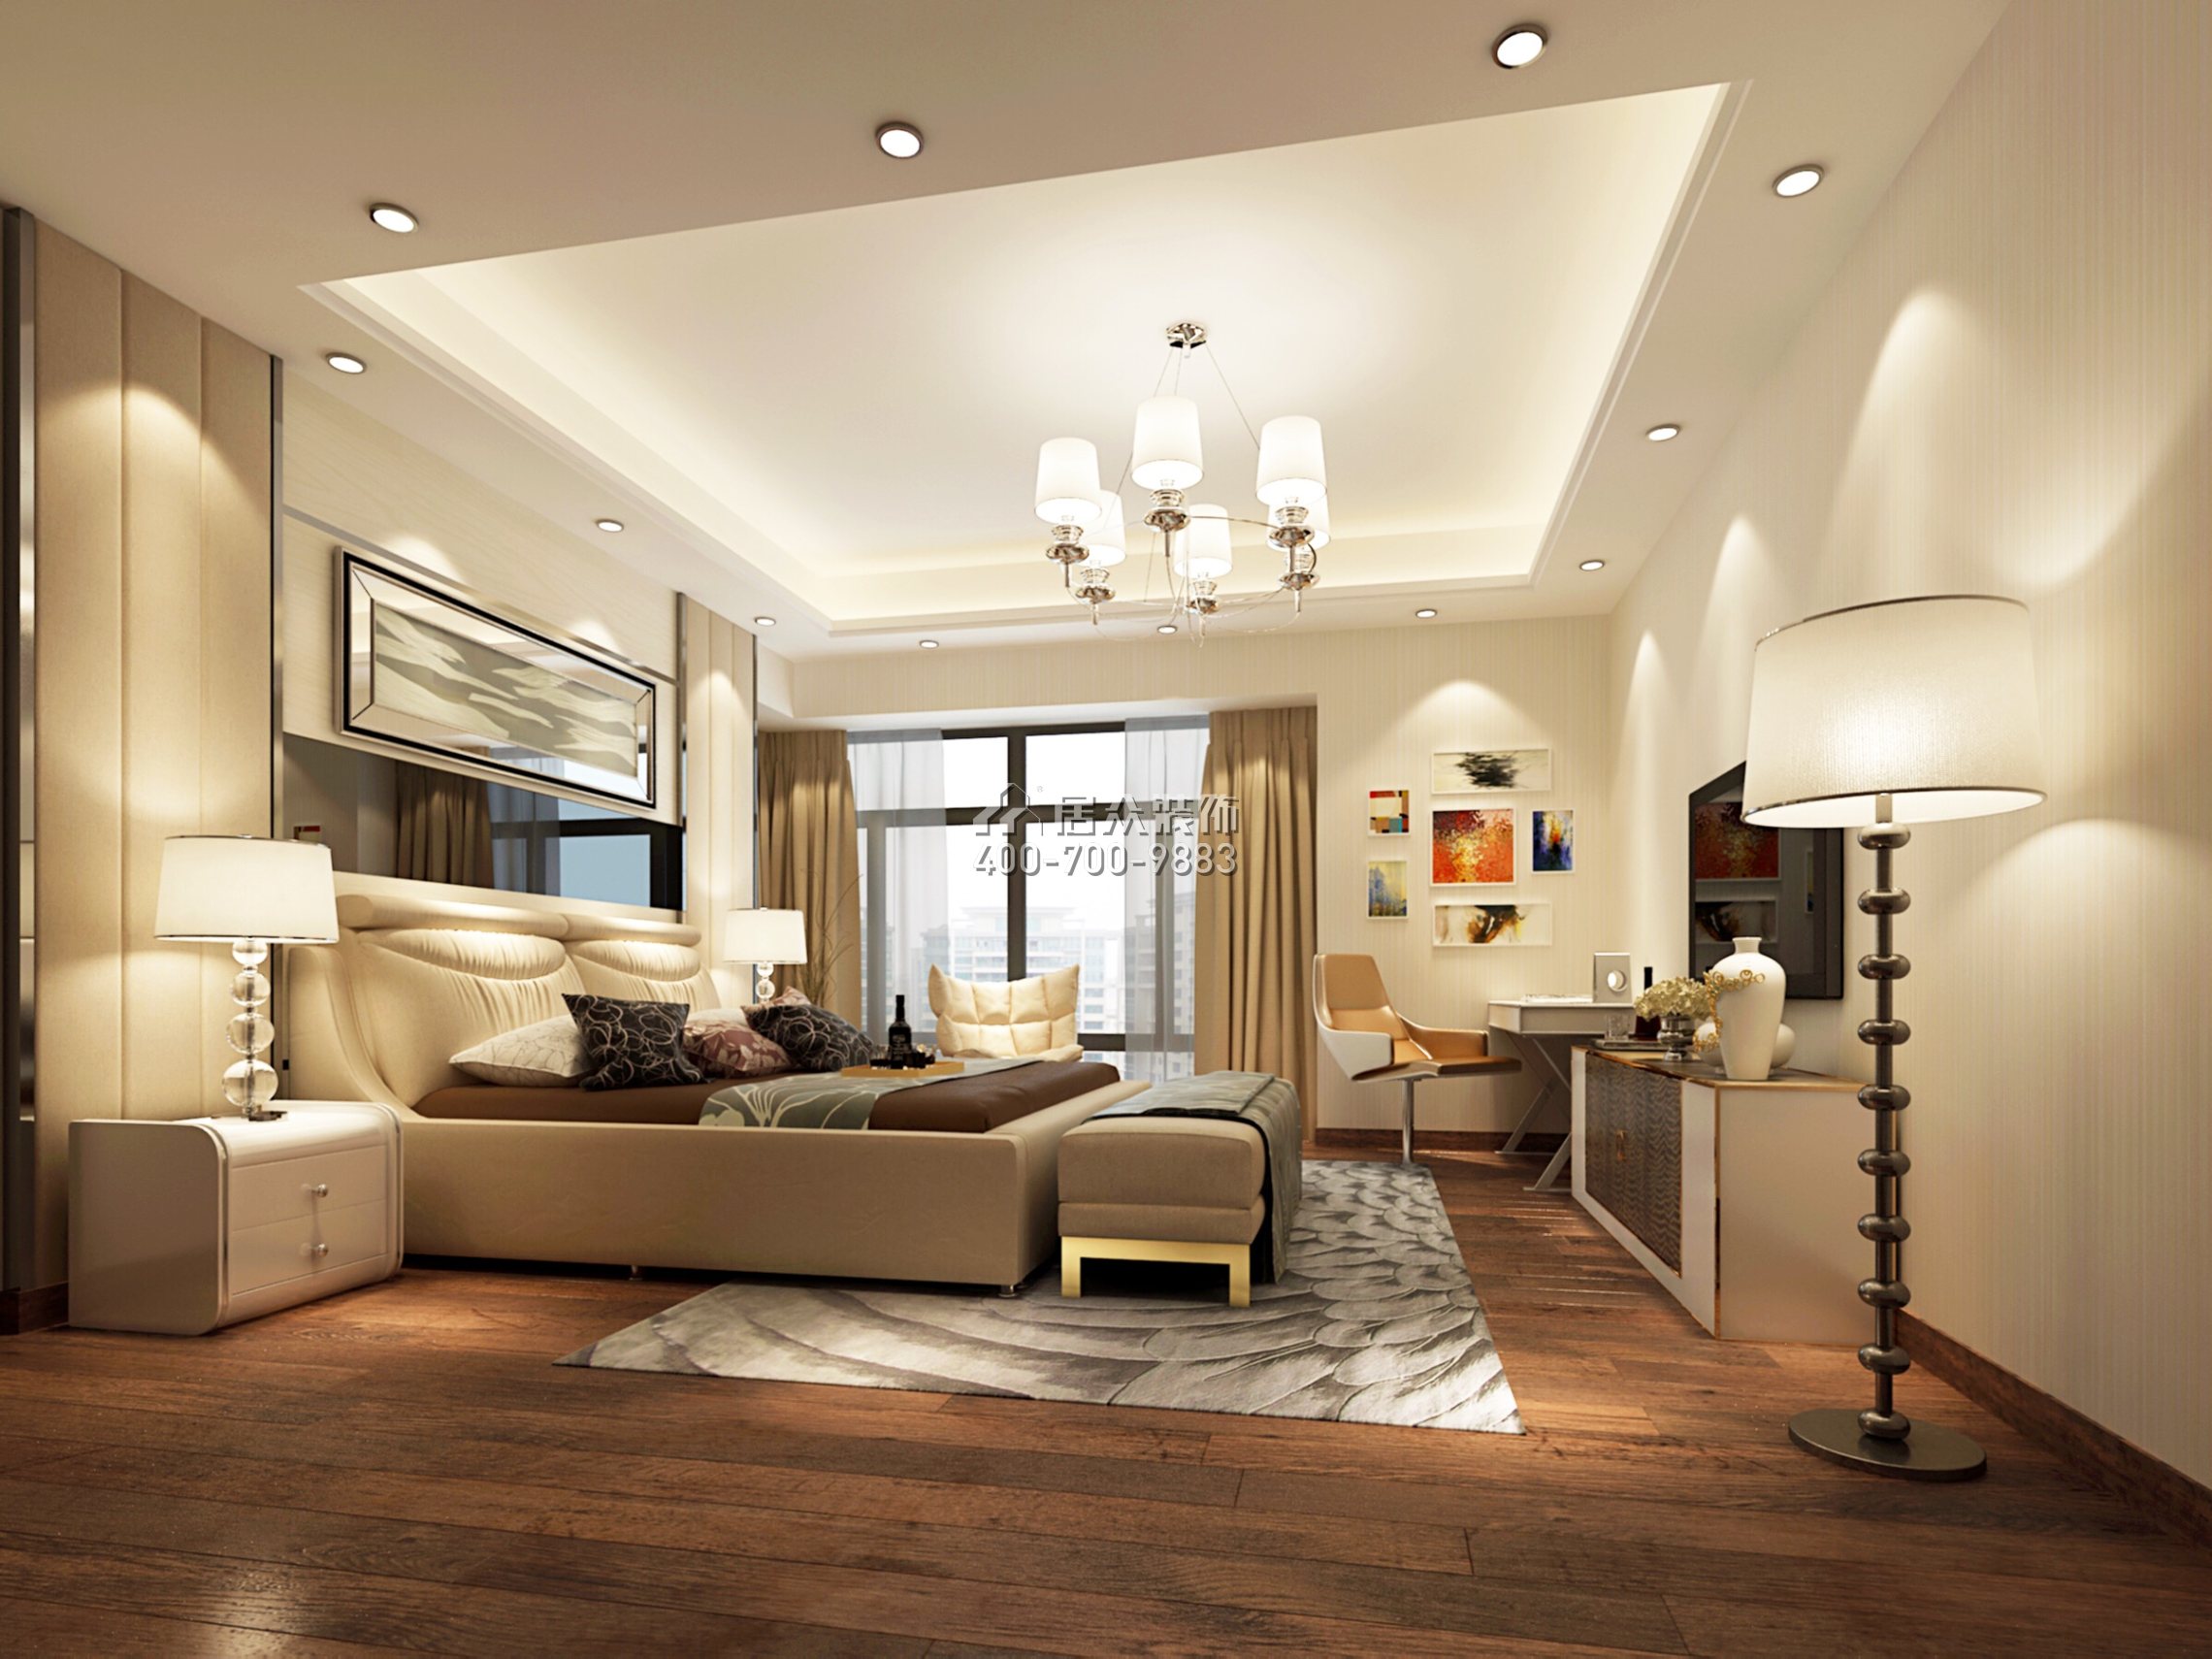 大信君匯灣240平方米新古典風格平層戶型臥室裝修效果圖